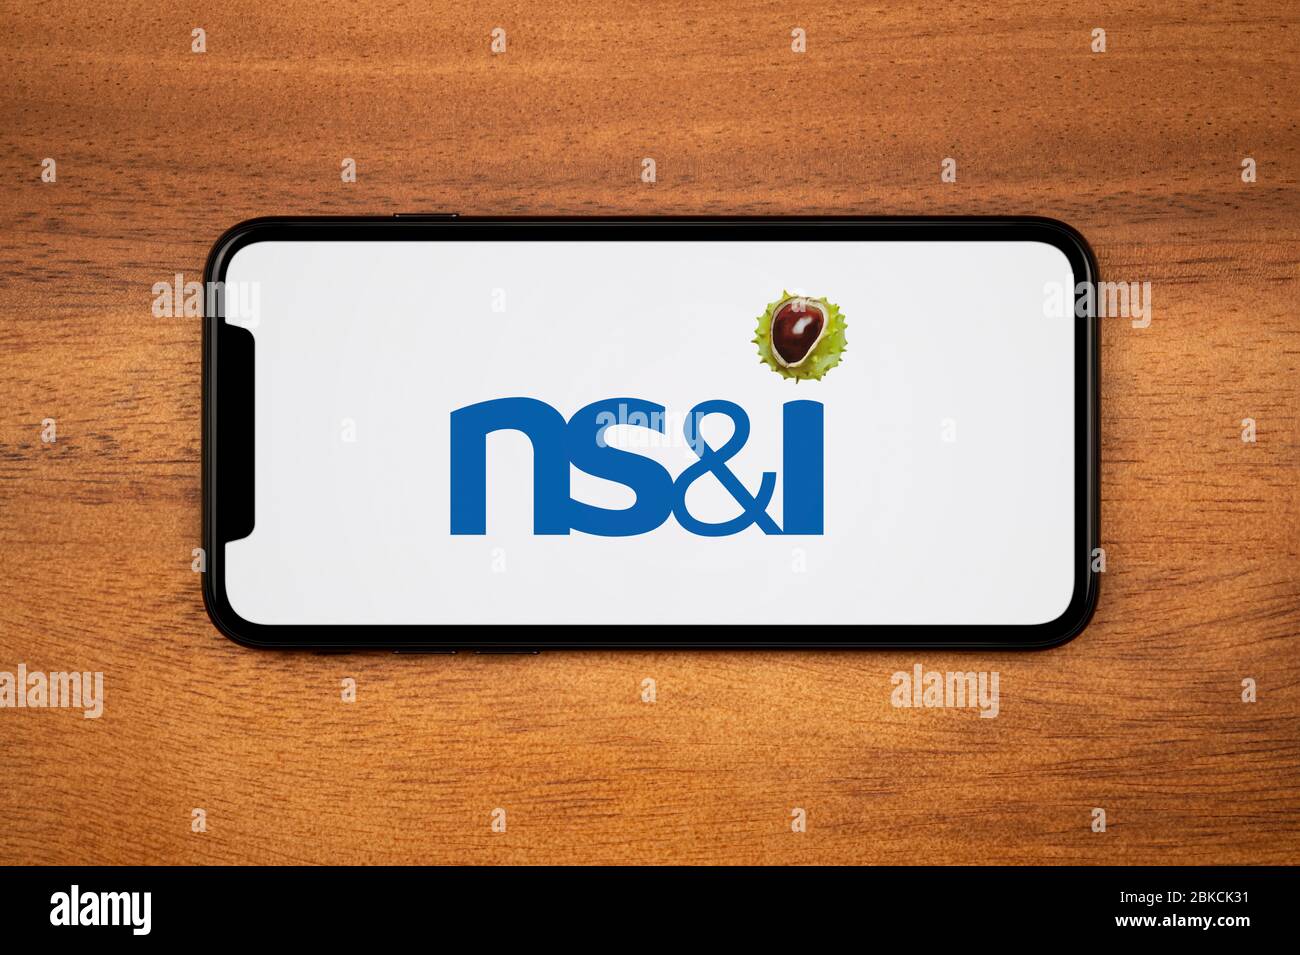 Un smartphone affichant le logo NS&I repose sur une table en bois ordinaire (usage éditorial uniquement). Banque D'Images